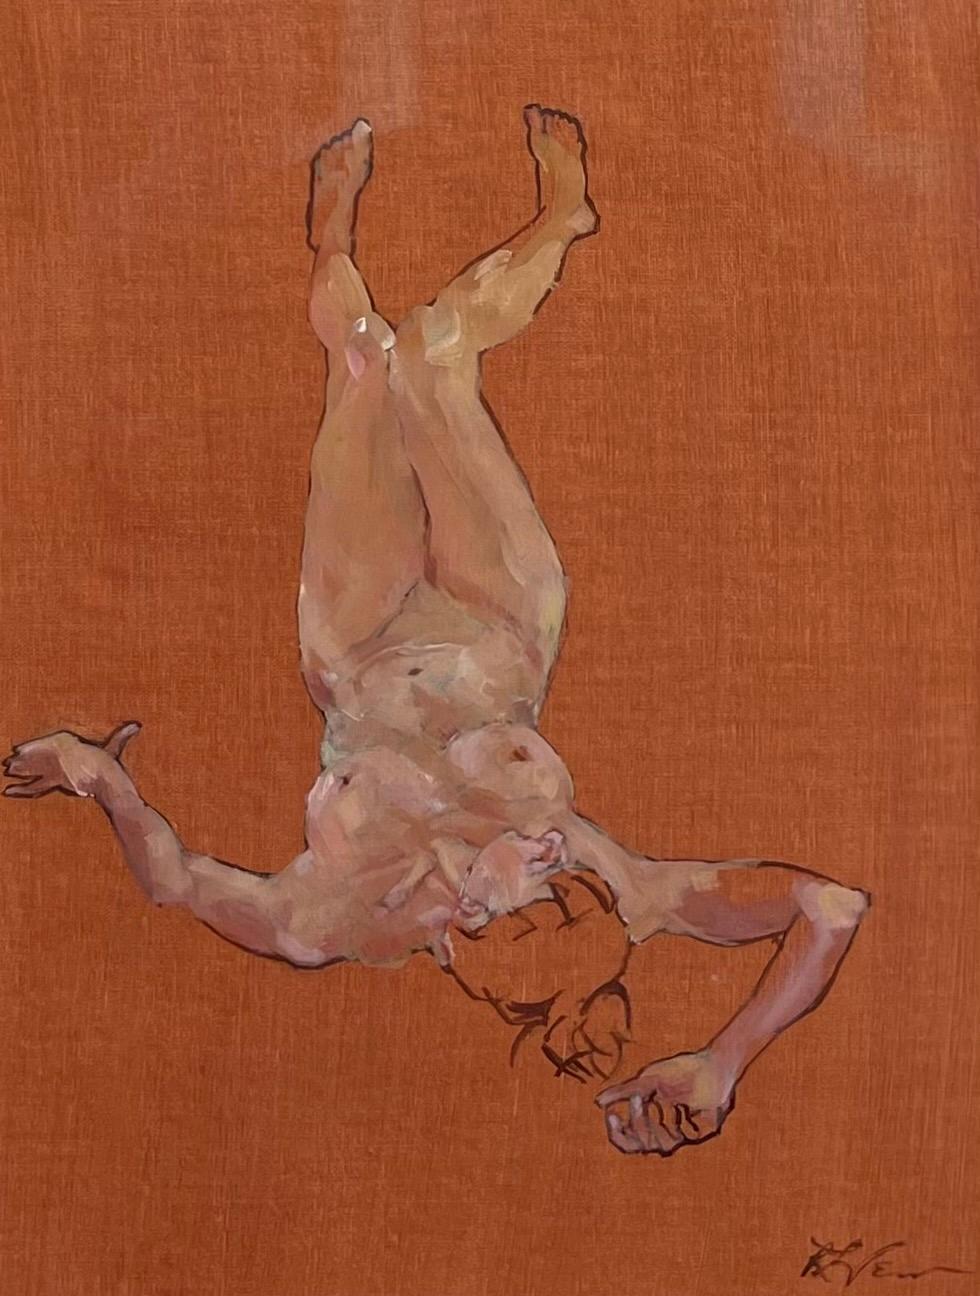 Portrait Painting Rebecca Venn - « Sans titre » - Peinture à l'huile d'une figure féminine nue allongée